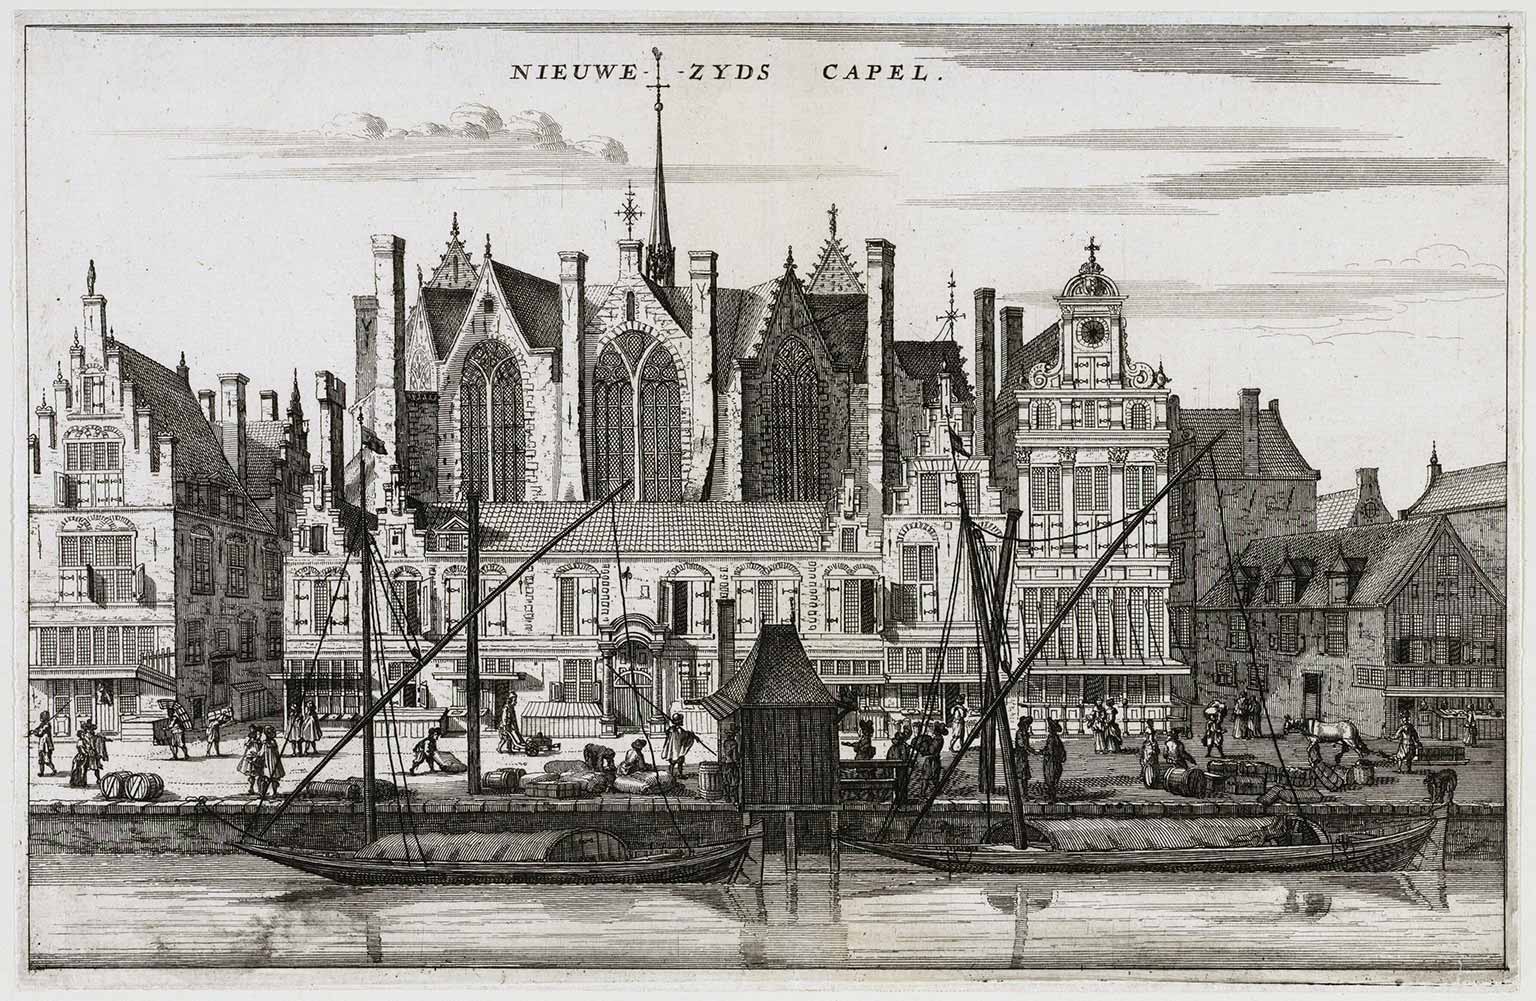 Gravure van de Nieuwezijds Kapel in 1663, Rokin, Amsterdam, met veerboten op de voorgrond